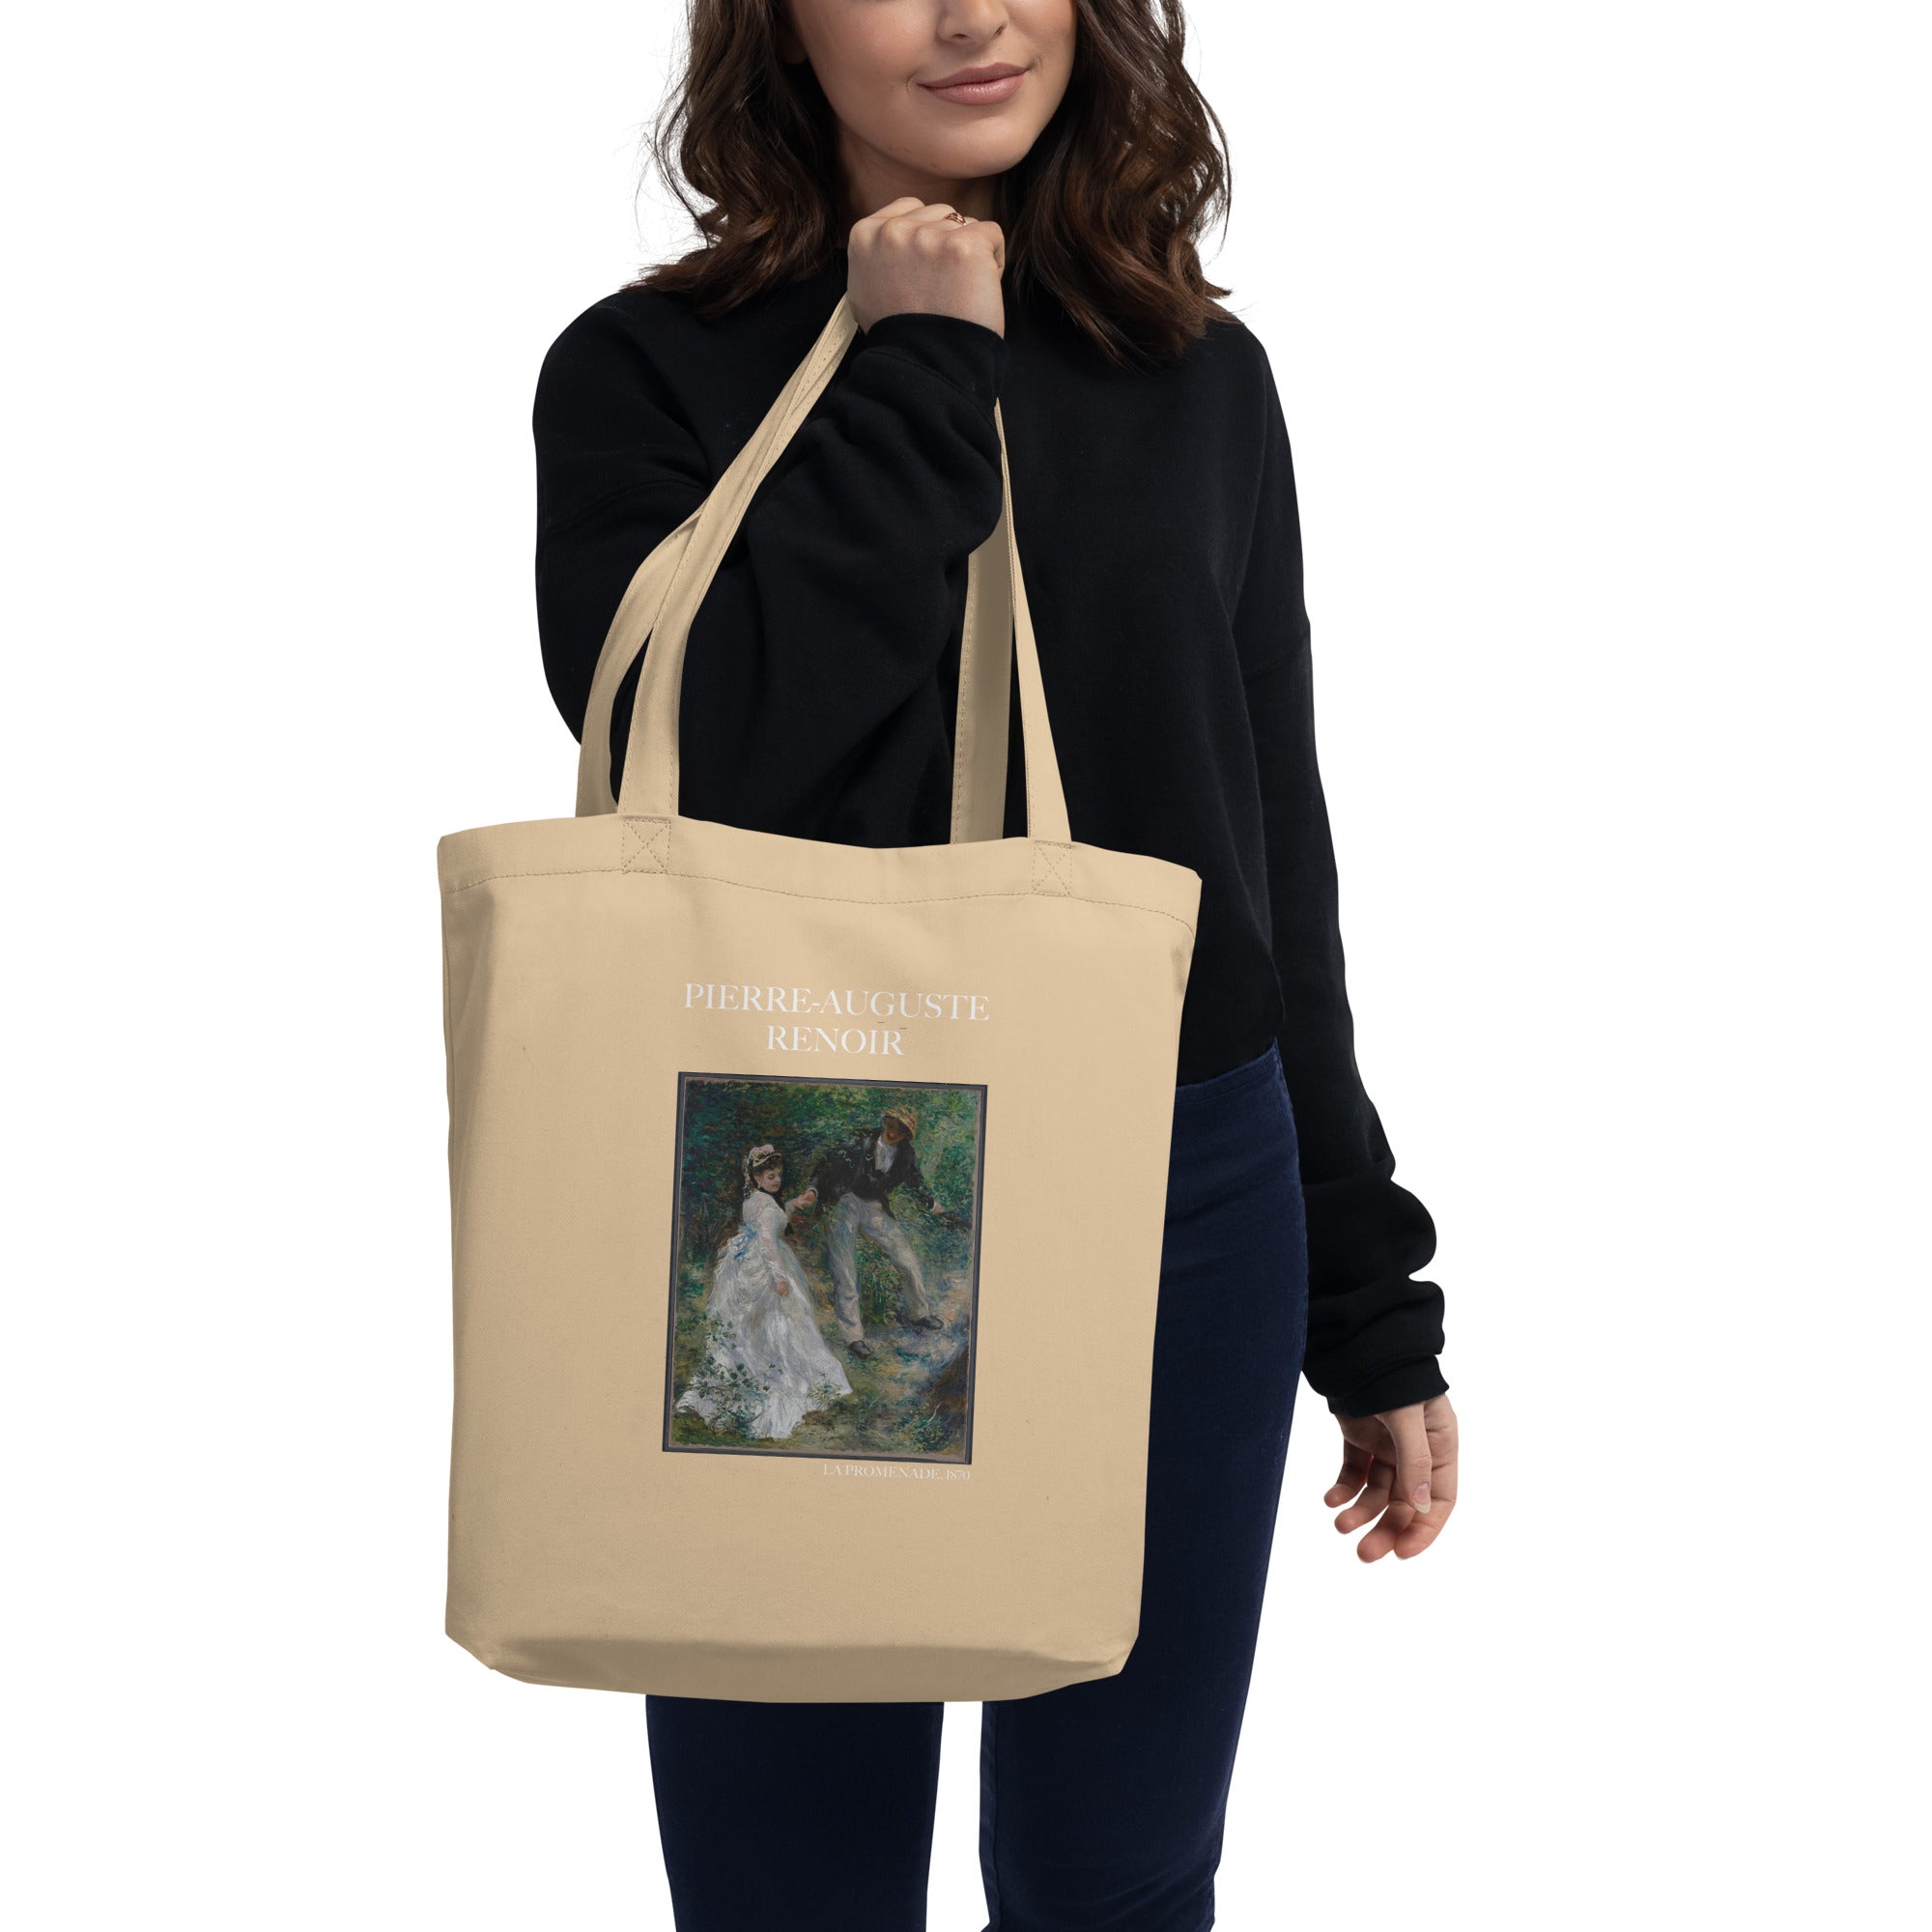 Pierre-Auguste Renoir 'La Promenade' berühmtes Gemälde Einkaufstasche | Umweltfreundliche Kunst Einkaufstasche